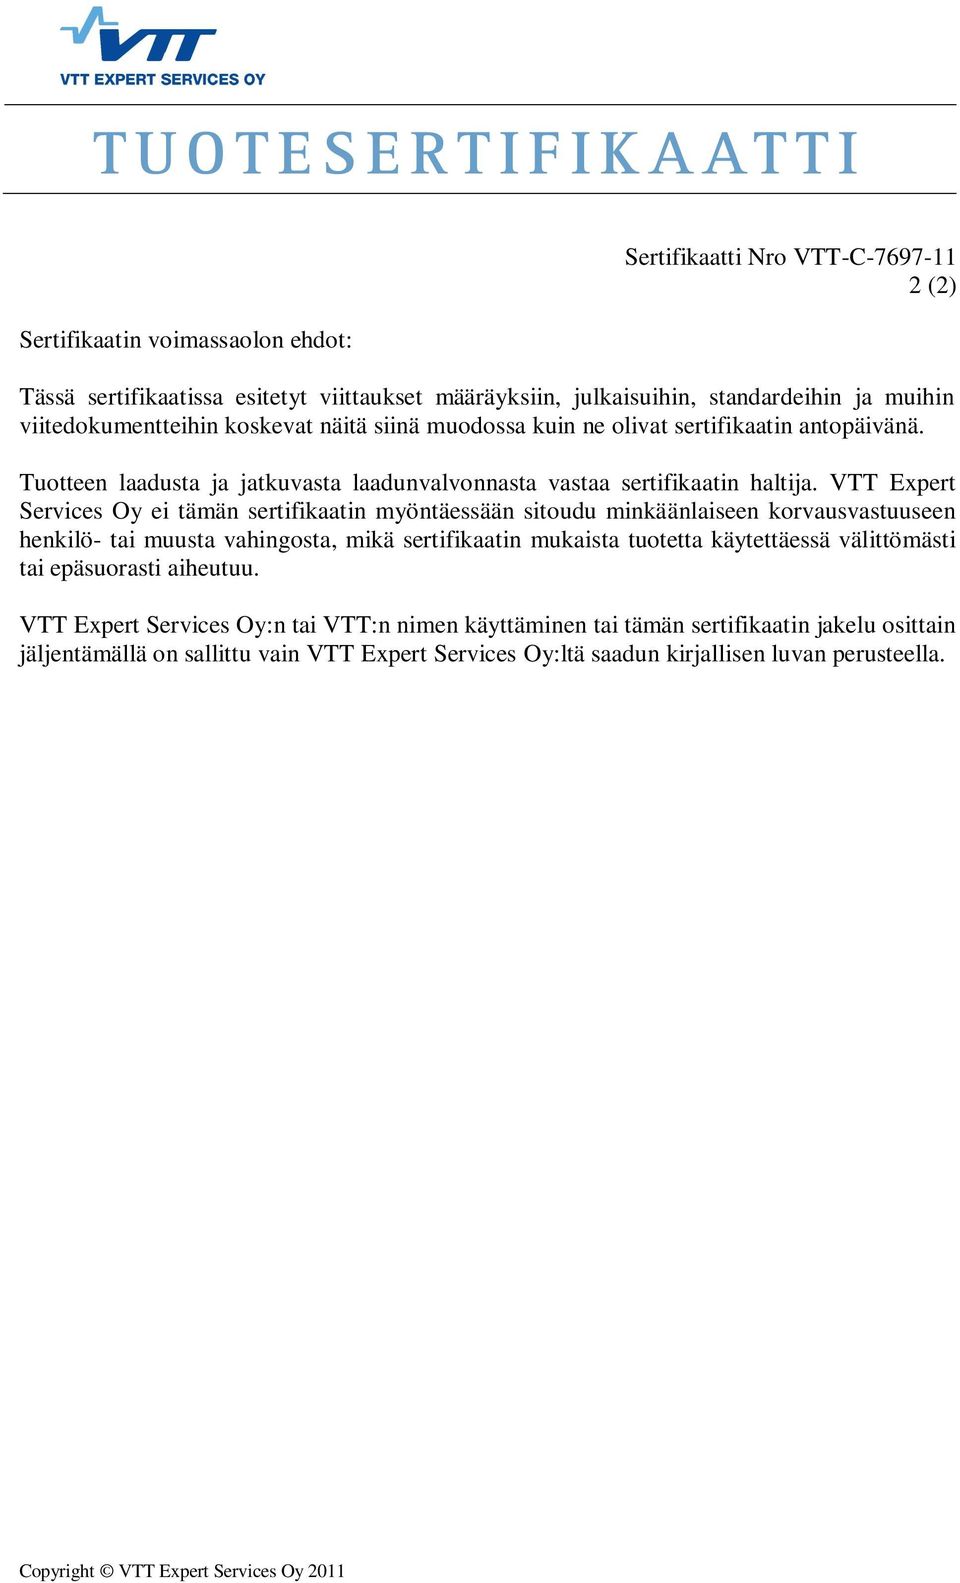 VTT Expert Services Oy ei tämän sertifikaatin myöntäessään sitoudu minkäänlaiseen korvausvastuuseen henkilö- tai muusta vahingosta, mikä sertifikaatin mukaista tuotetta käytettäessä